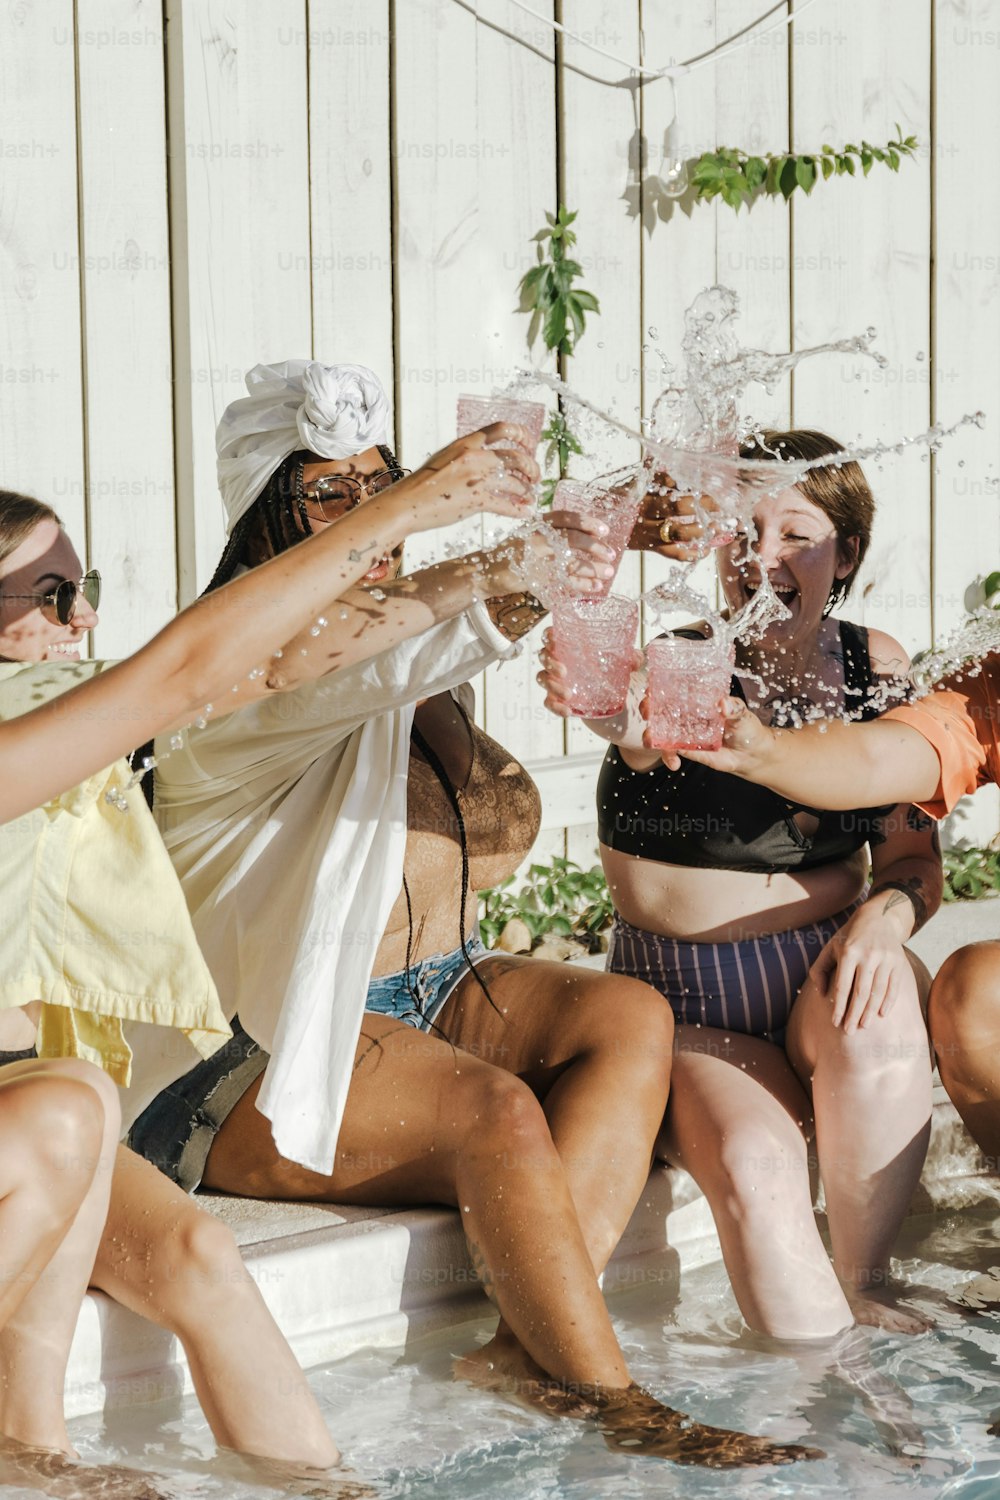 Un gruppo di donne sedute in una pozza d'acqua